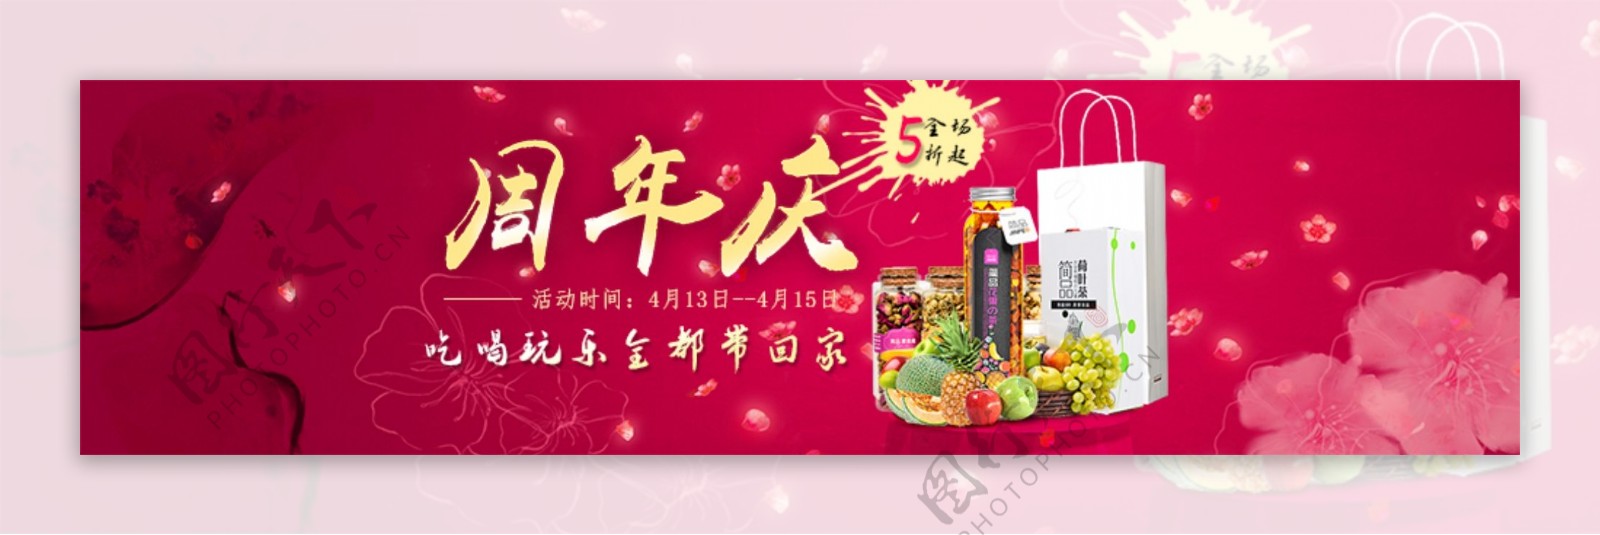 淘宝周年庆茶饮海报